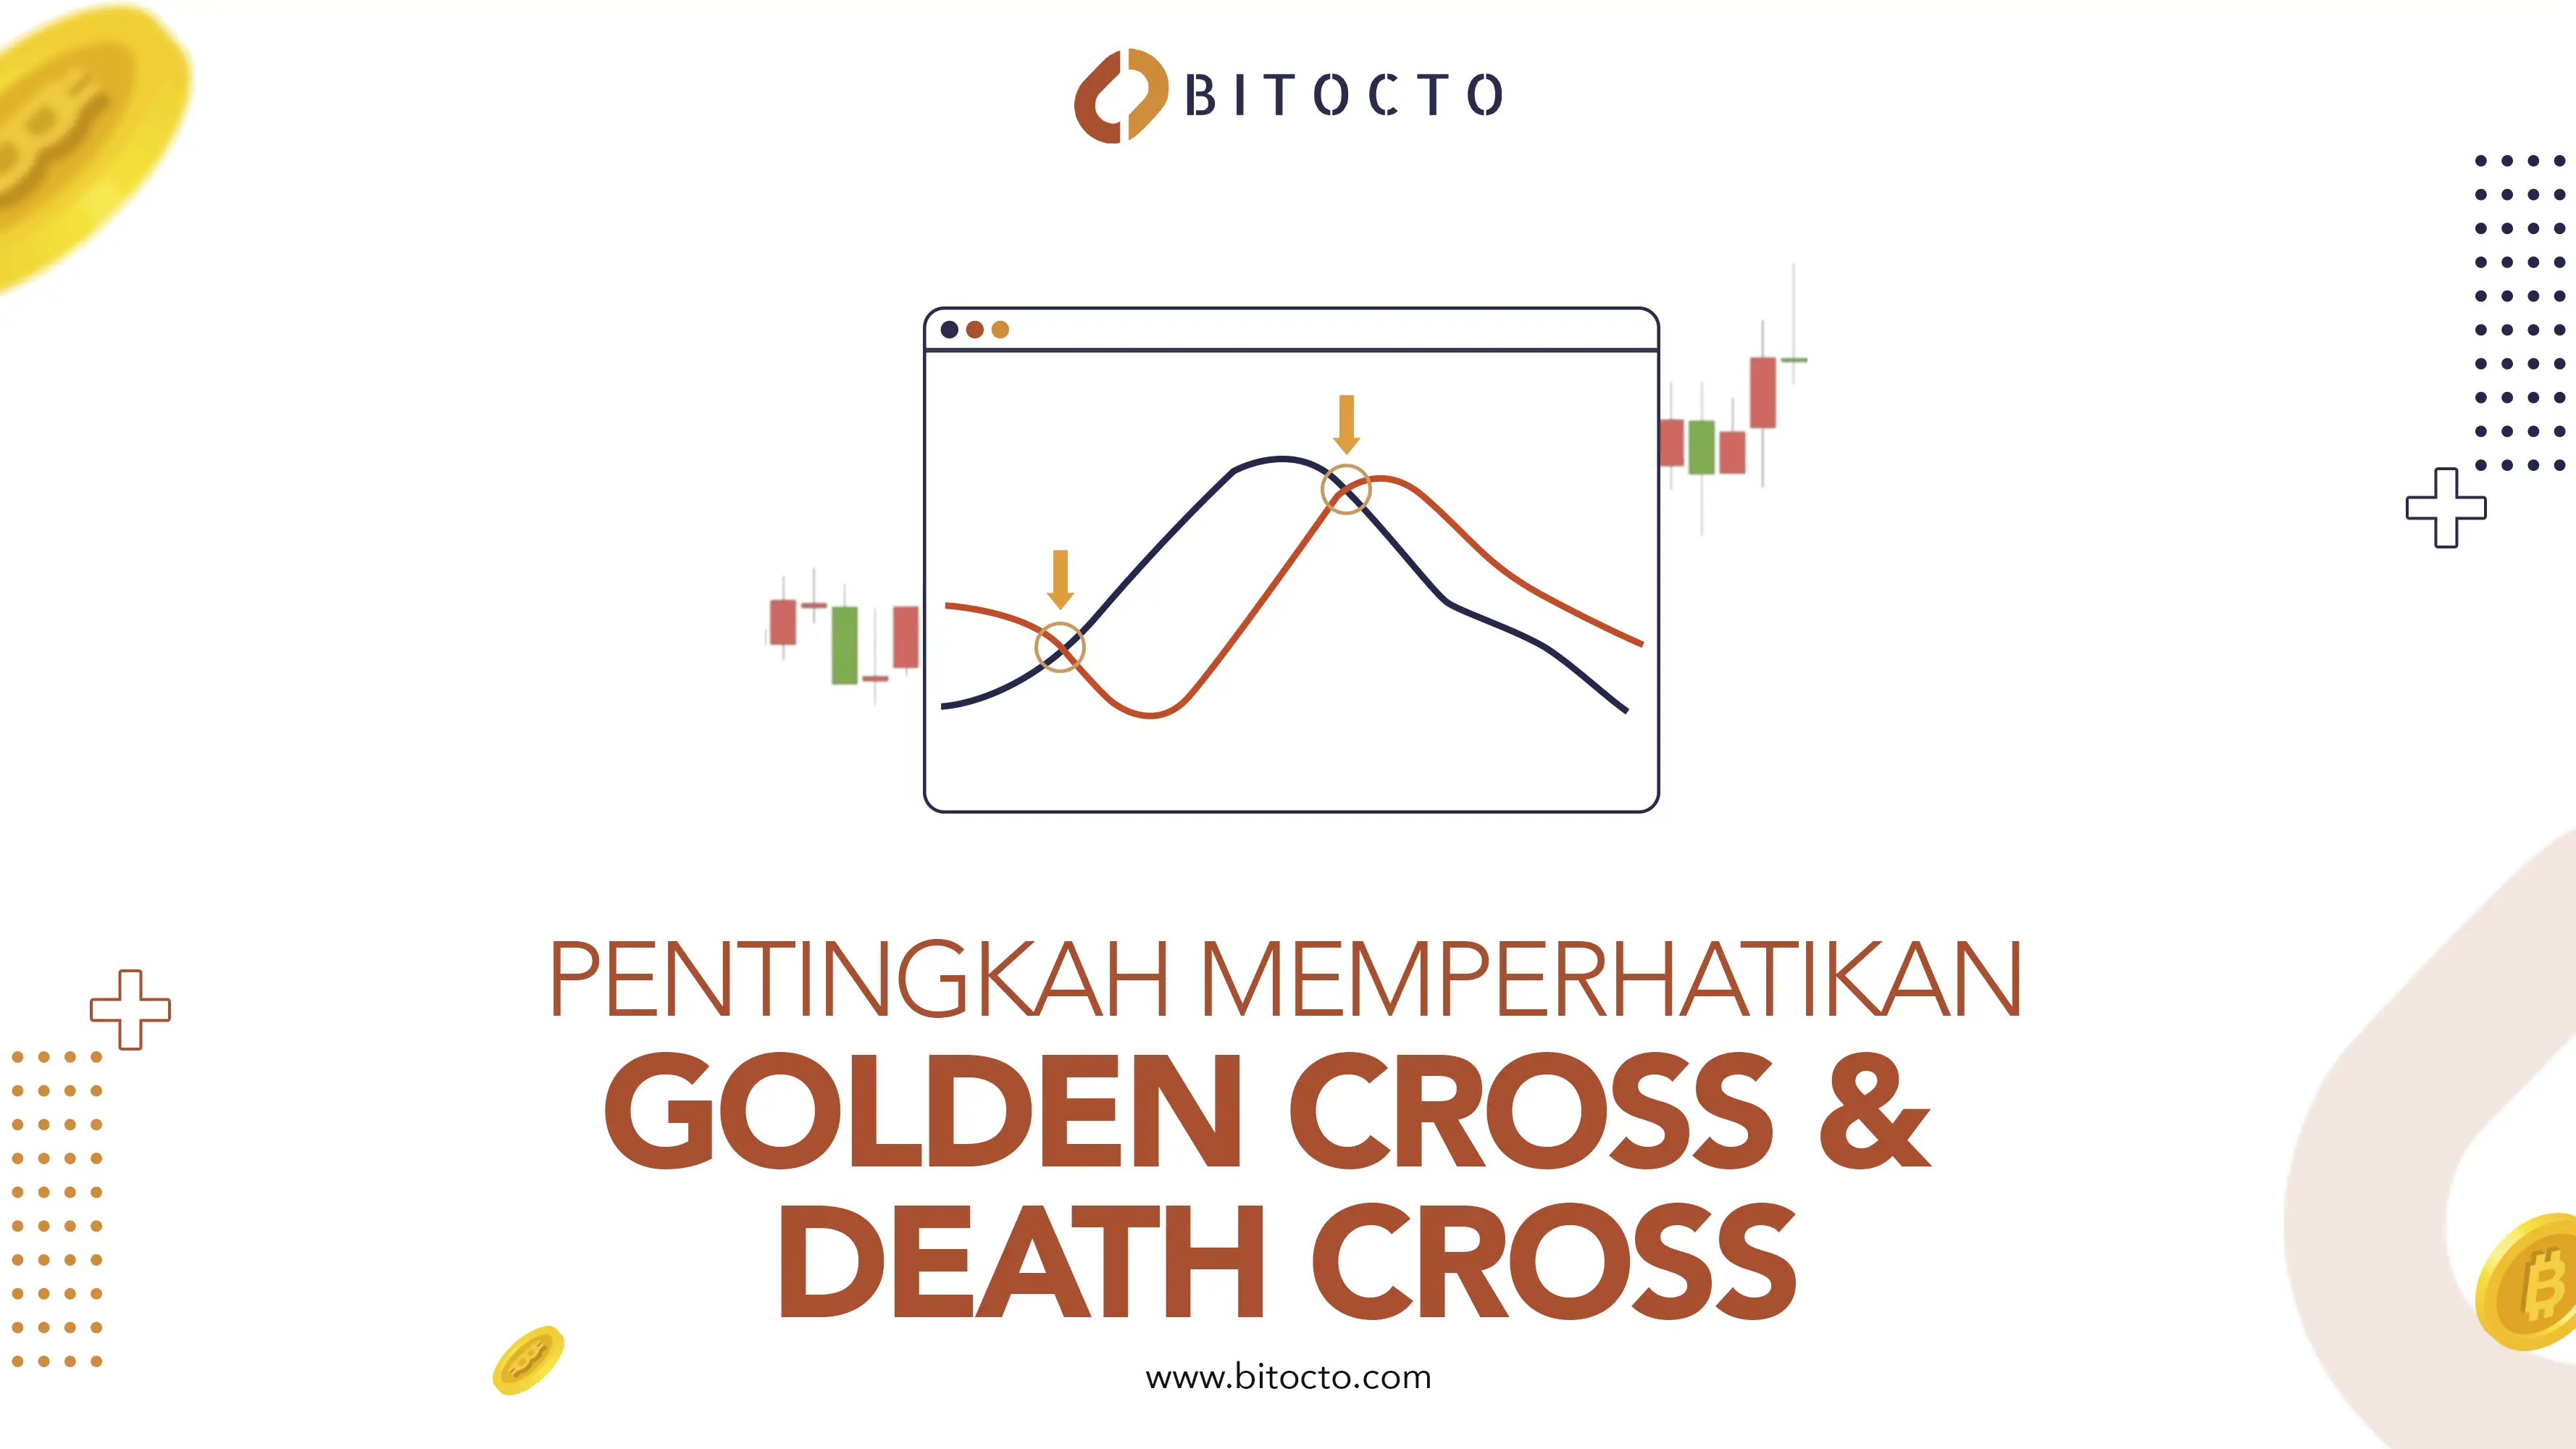 Golden Cross & Death Cross